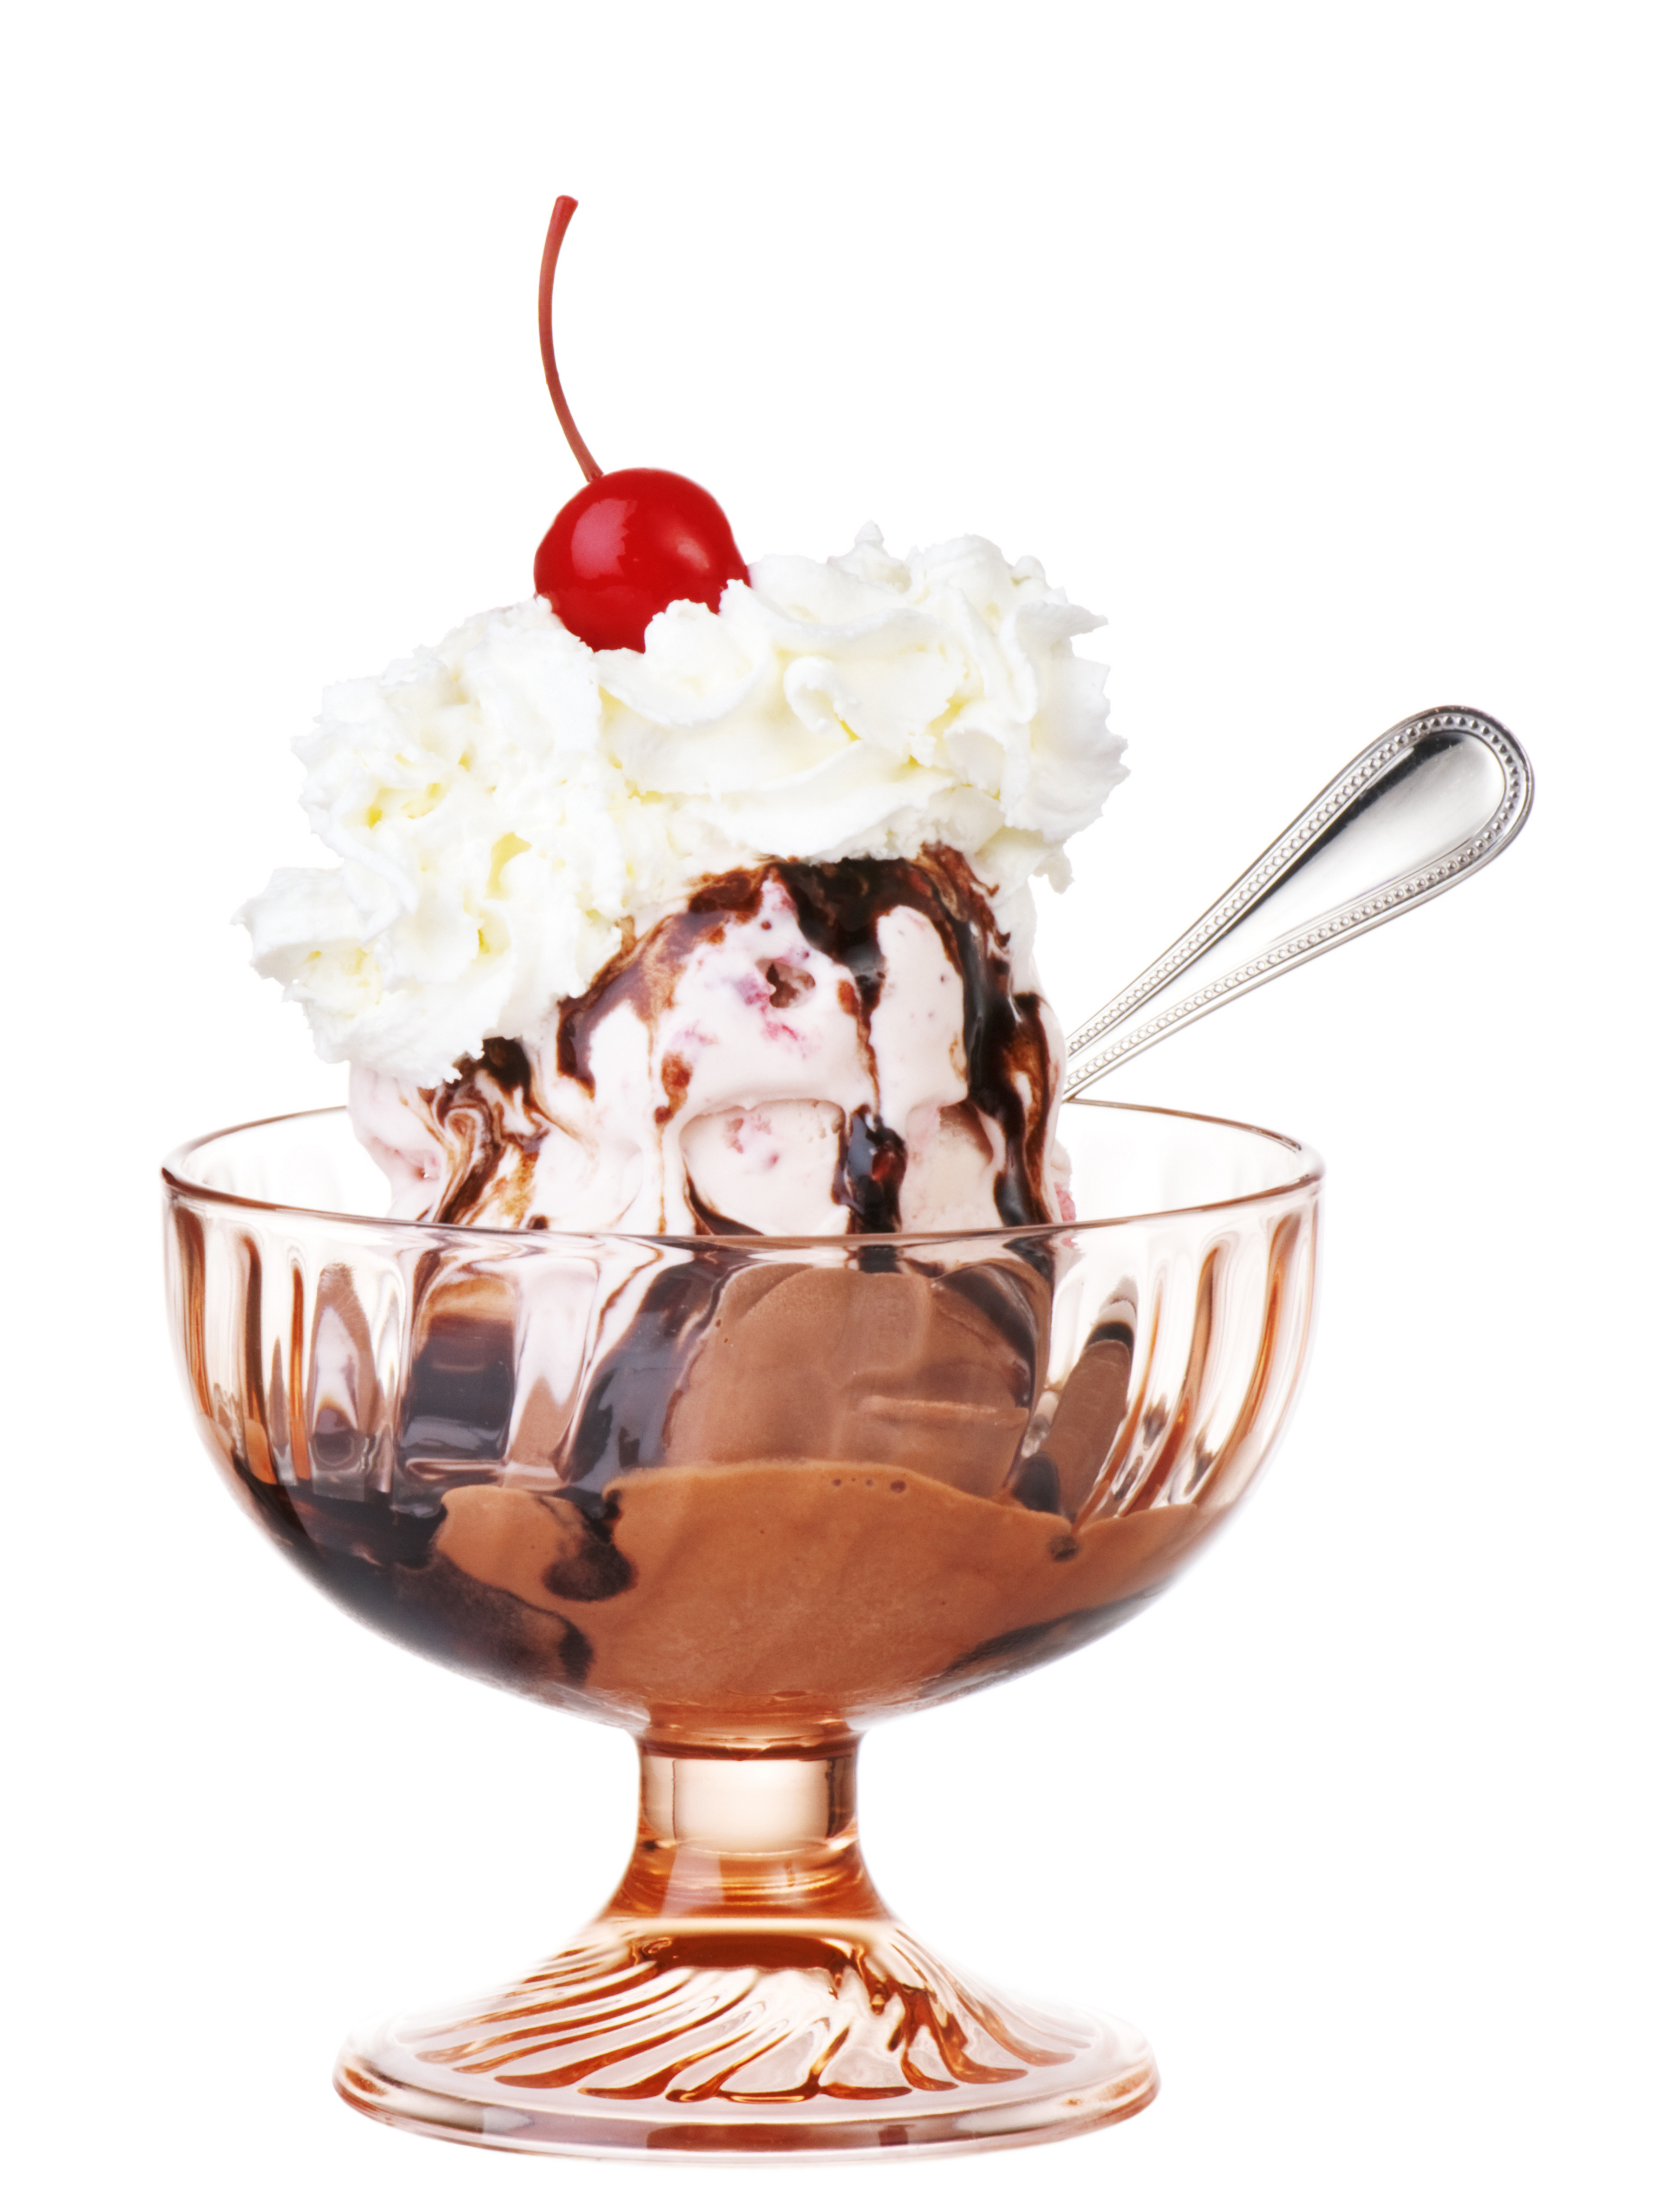 Картинка Шоколад Сливки Мороженое Вишня Миска Еда Белый фон 4200x5495 для м...